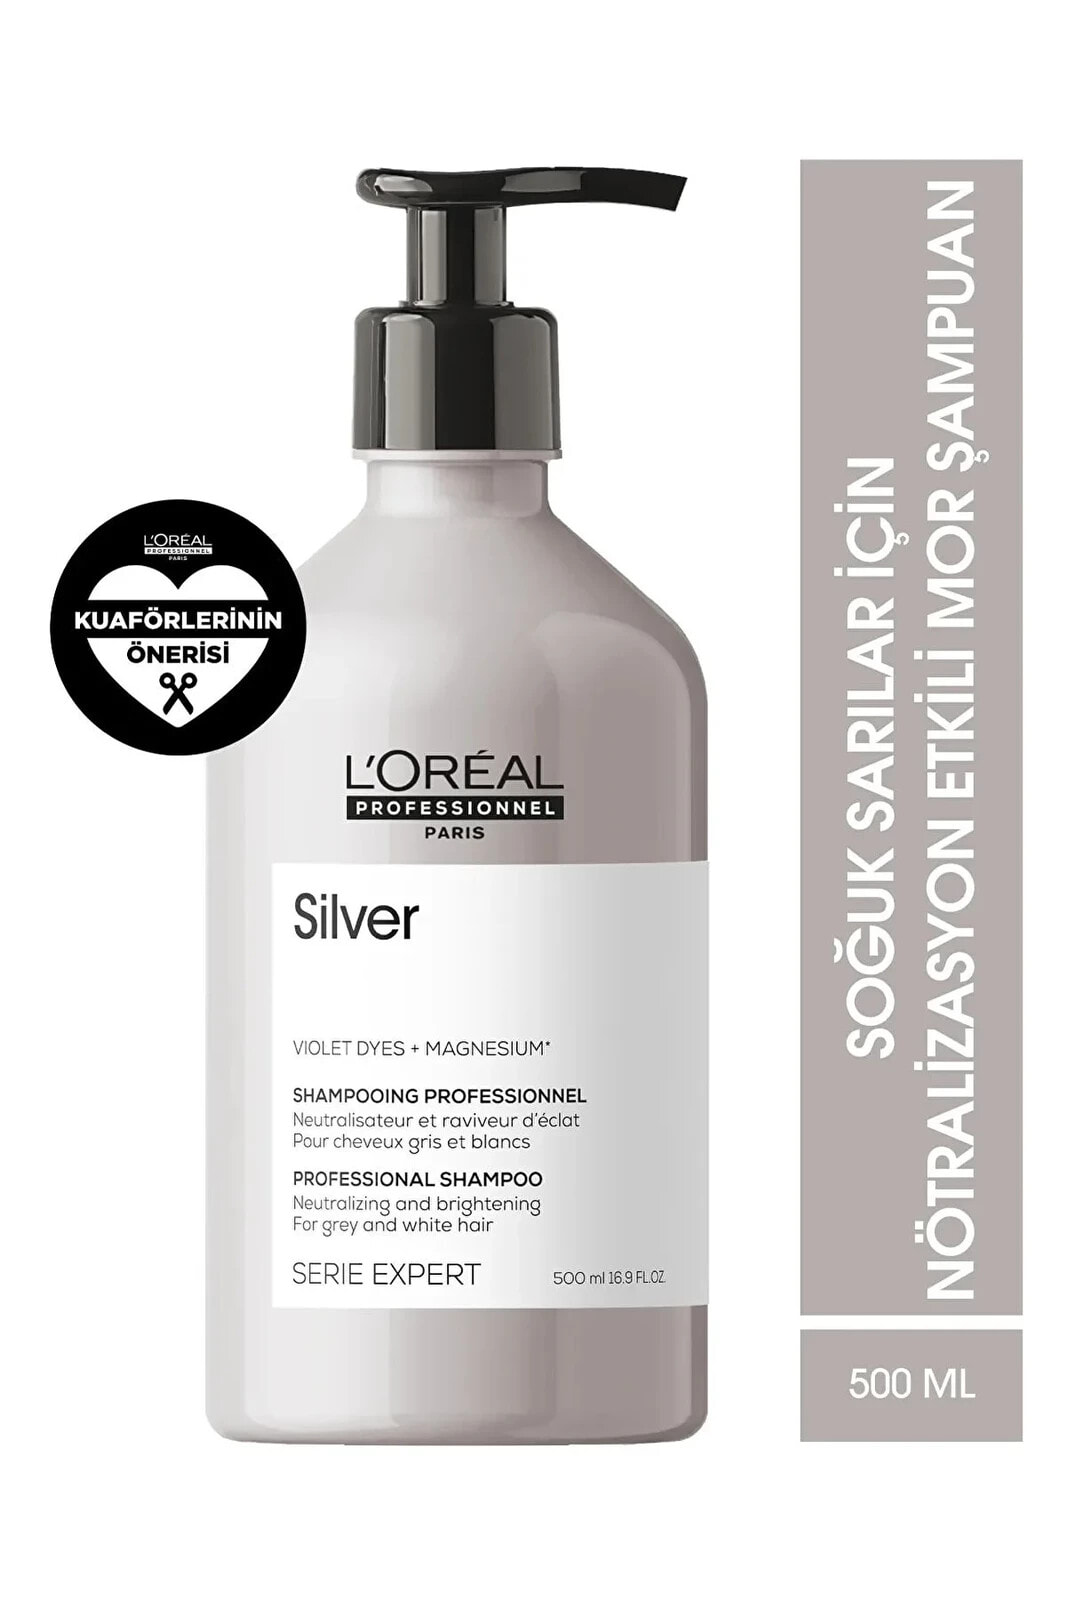 L'OREAL PARİS SE21 Silver Shapoo Gri Saçlar İçin Onarıcı-Koruyucu Şampuan 500mlSED464631316431313154